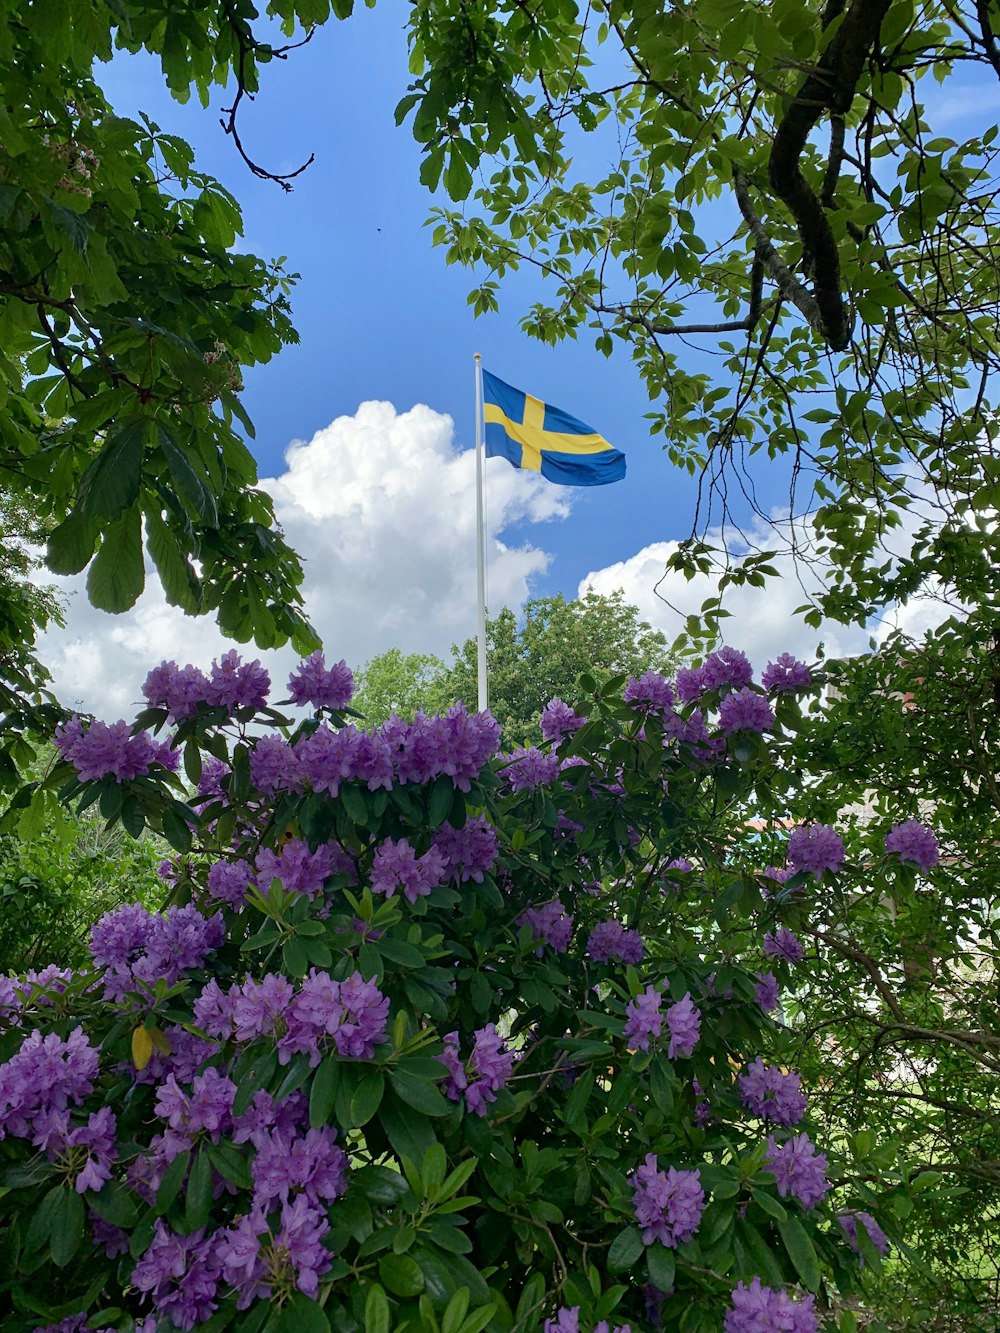 Blaue Flagge mit gelbem Kreuz in der Mitte neben lila Blumenbüschen